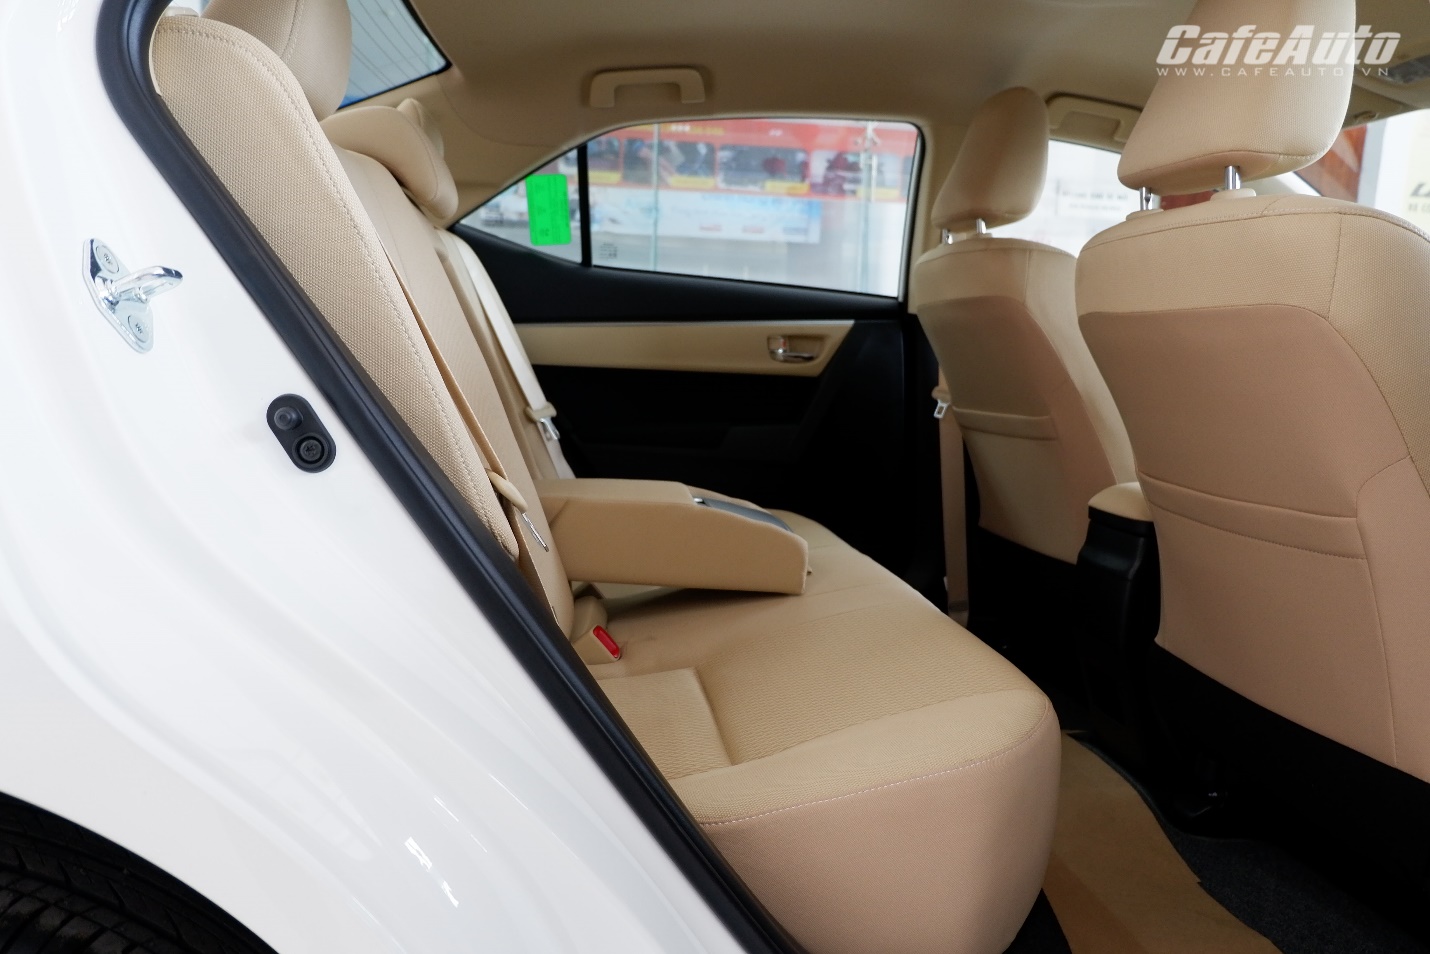 Toyota Corolla Altis phiên bản nâng cấp: bổ sung hệ thống Cruise Control, giá tăng nhẹ - ảnh 11